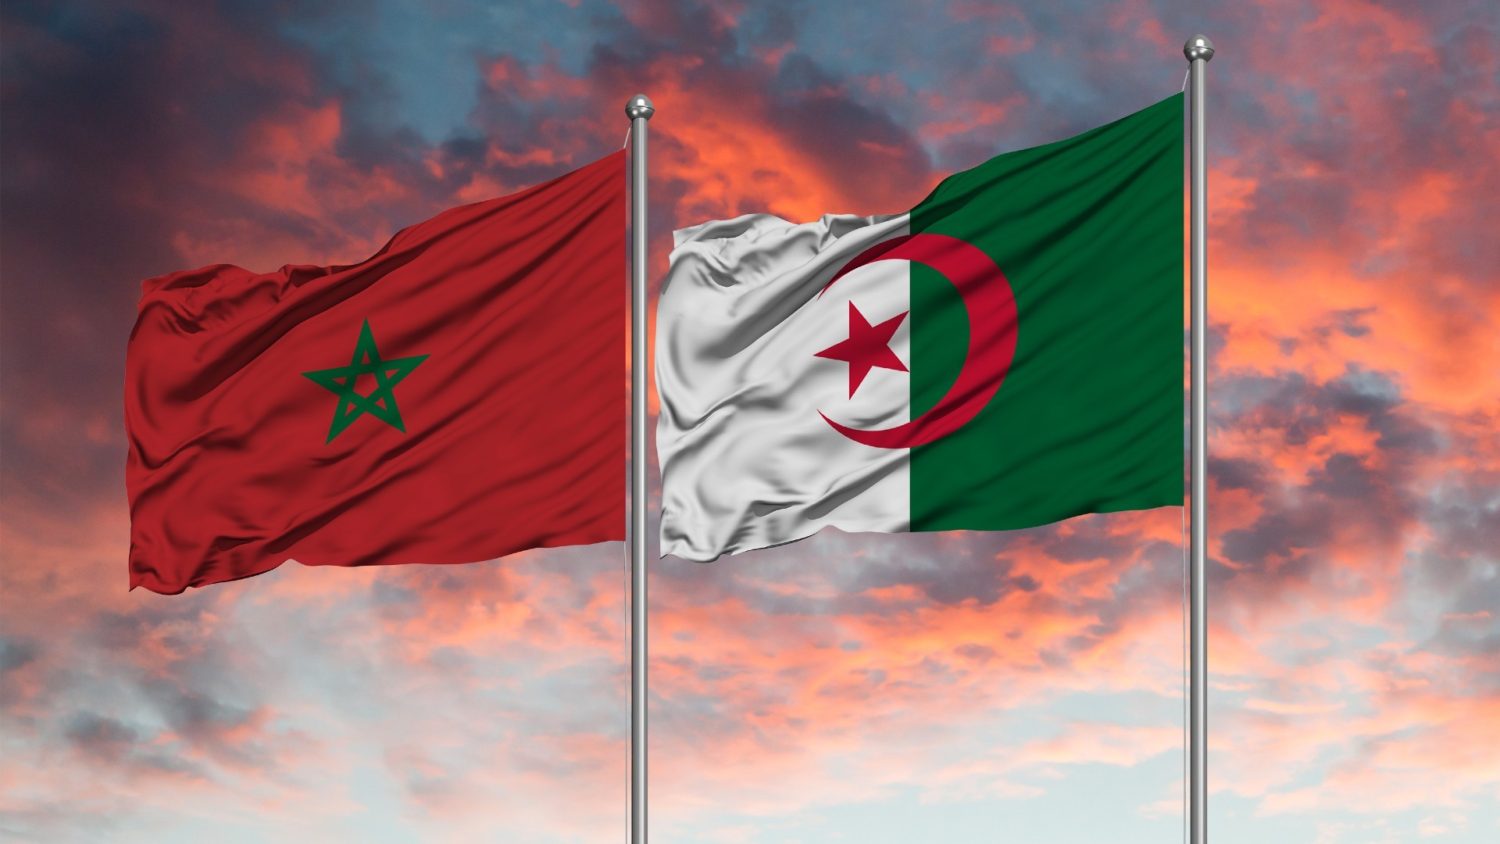 المغرب يفتح جبهة جديدة في صراعه مع الجزائر بزعم ما يسمى بالصحراء الشرقية